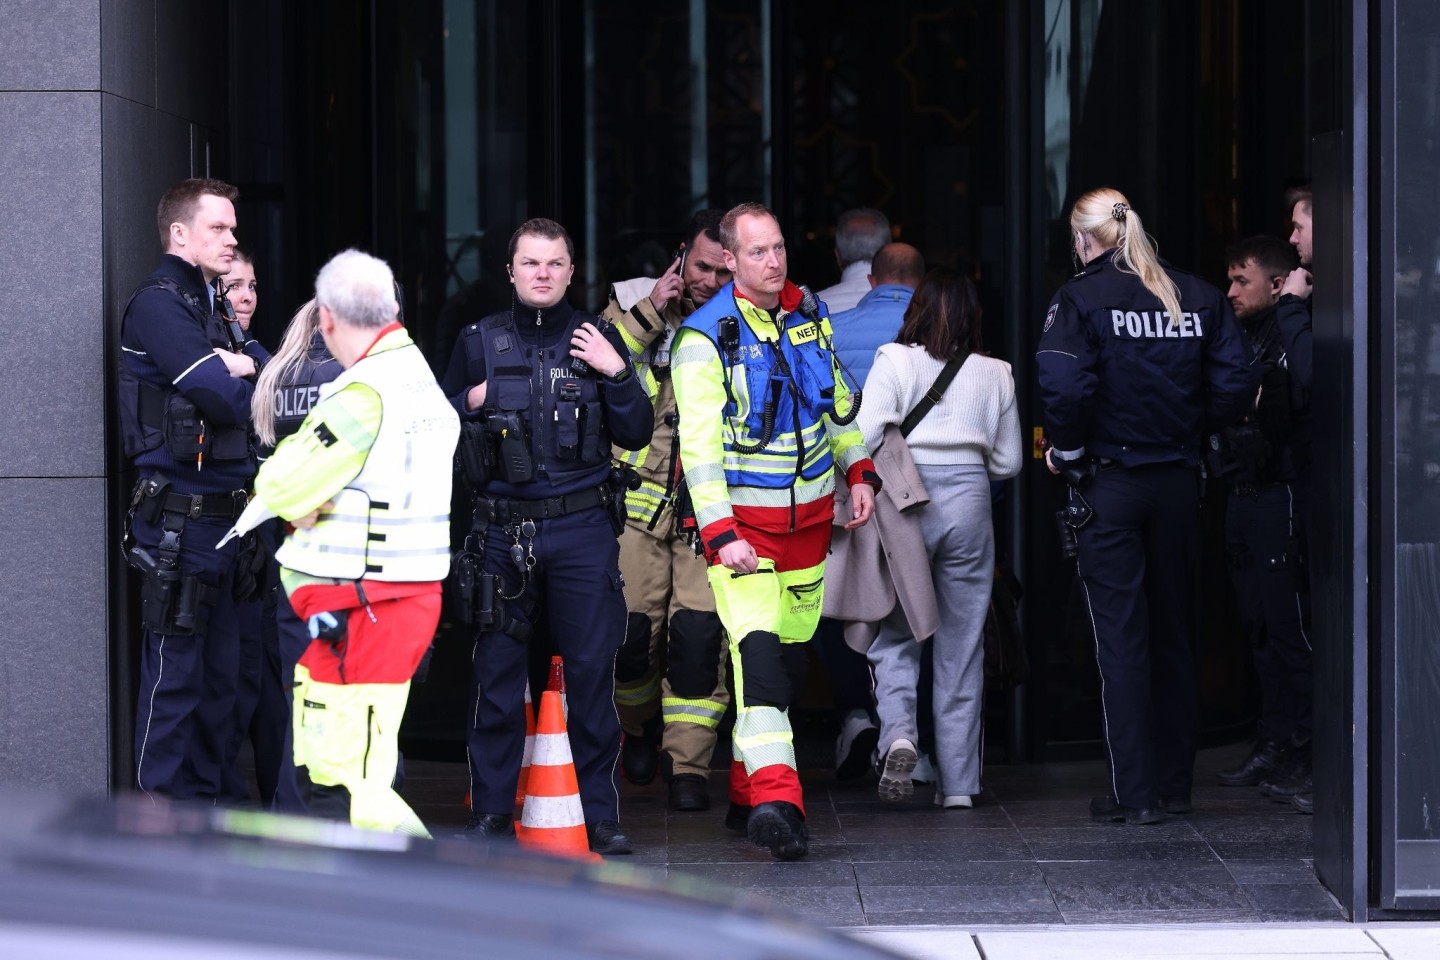 Einsatzkräfte der Polizei haben eine Eskalation an einem Hotel in Düsseldorf verhindert.